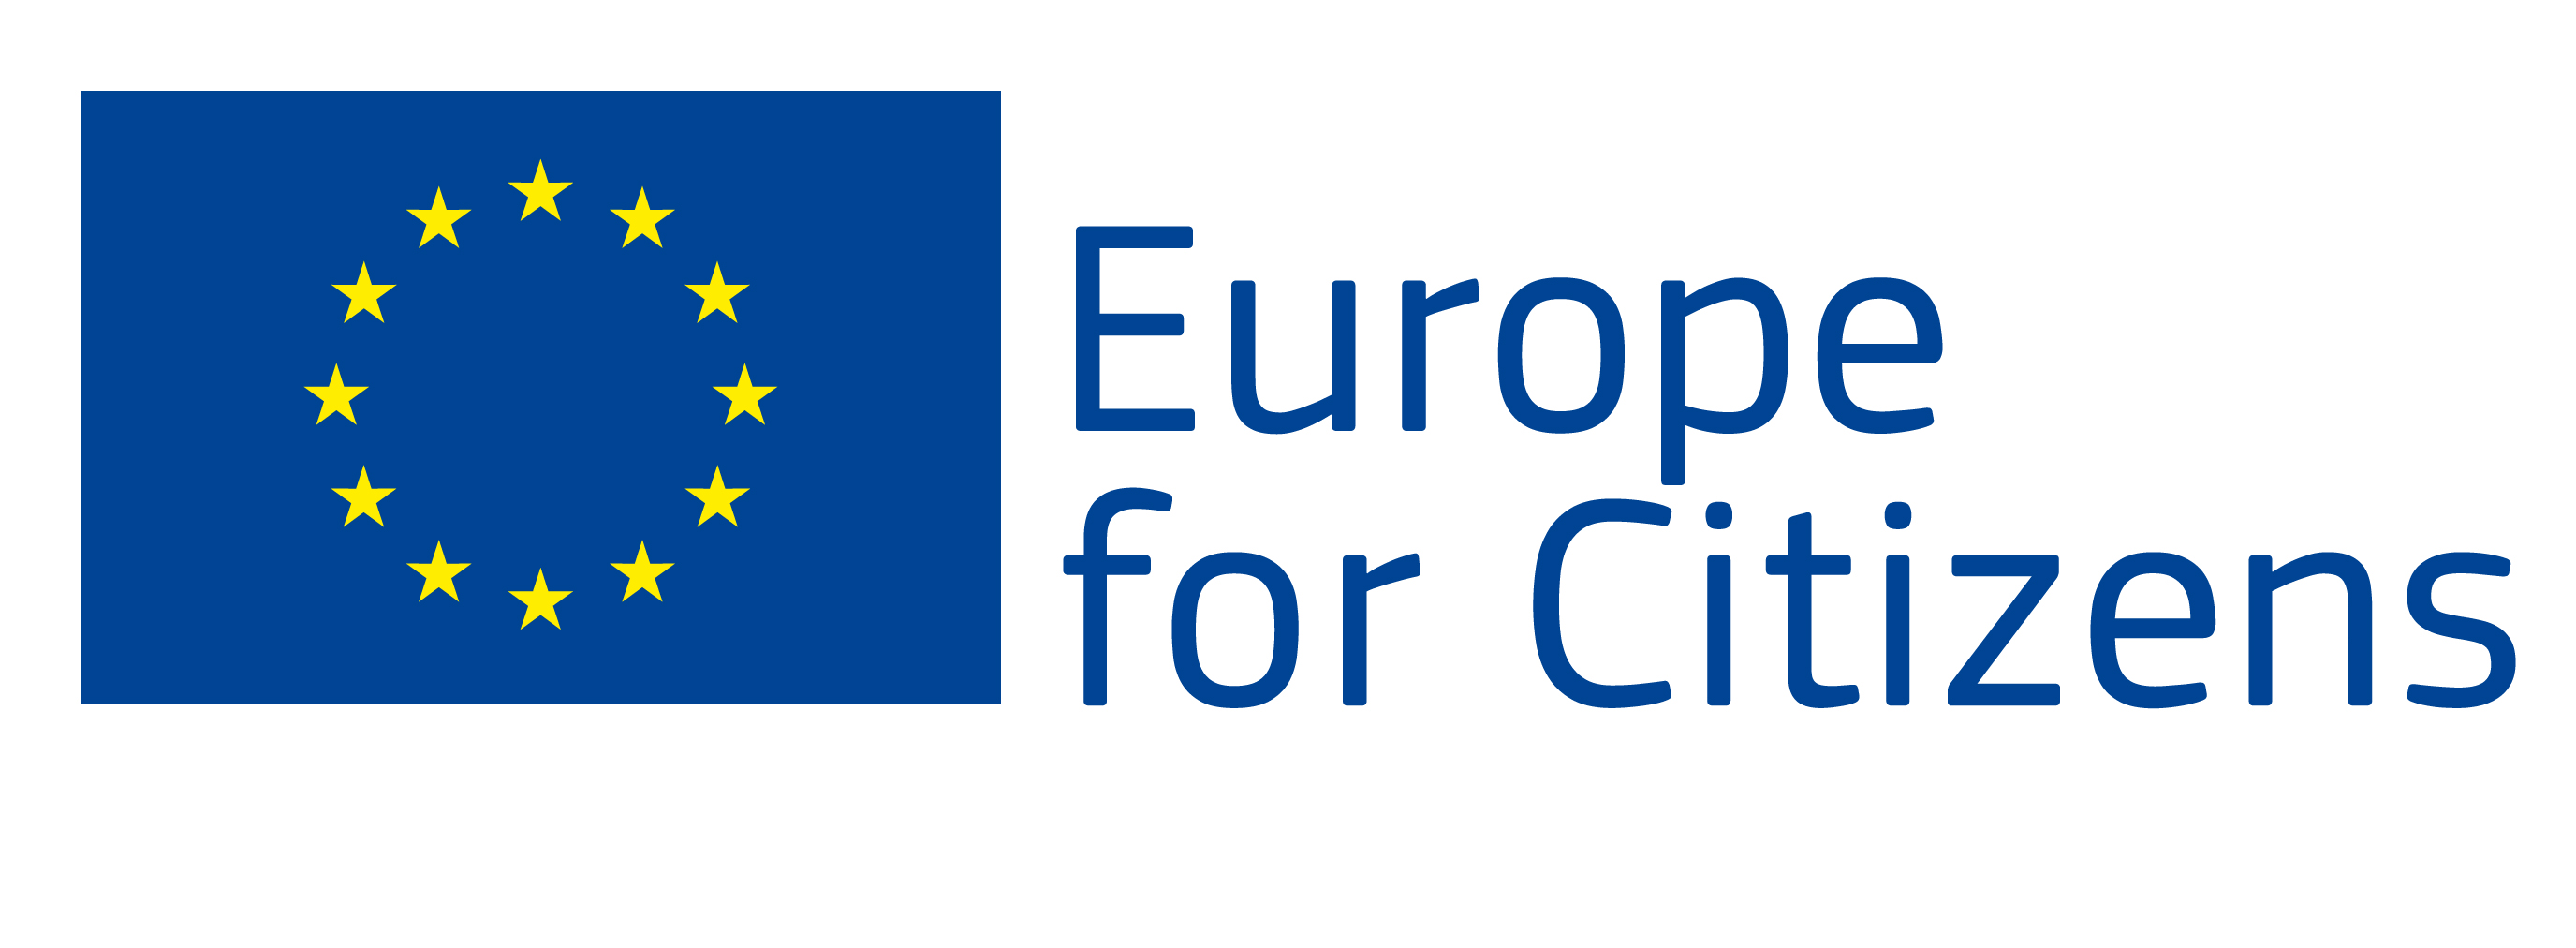 europe_for_citizens_en.jpg